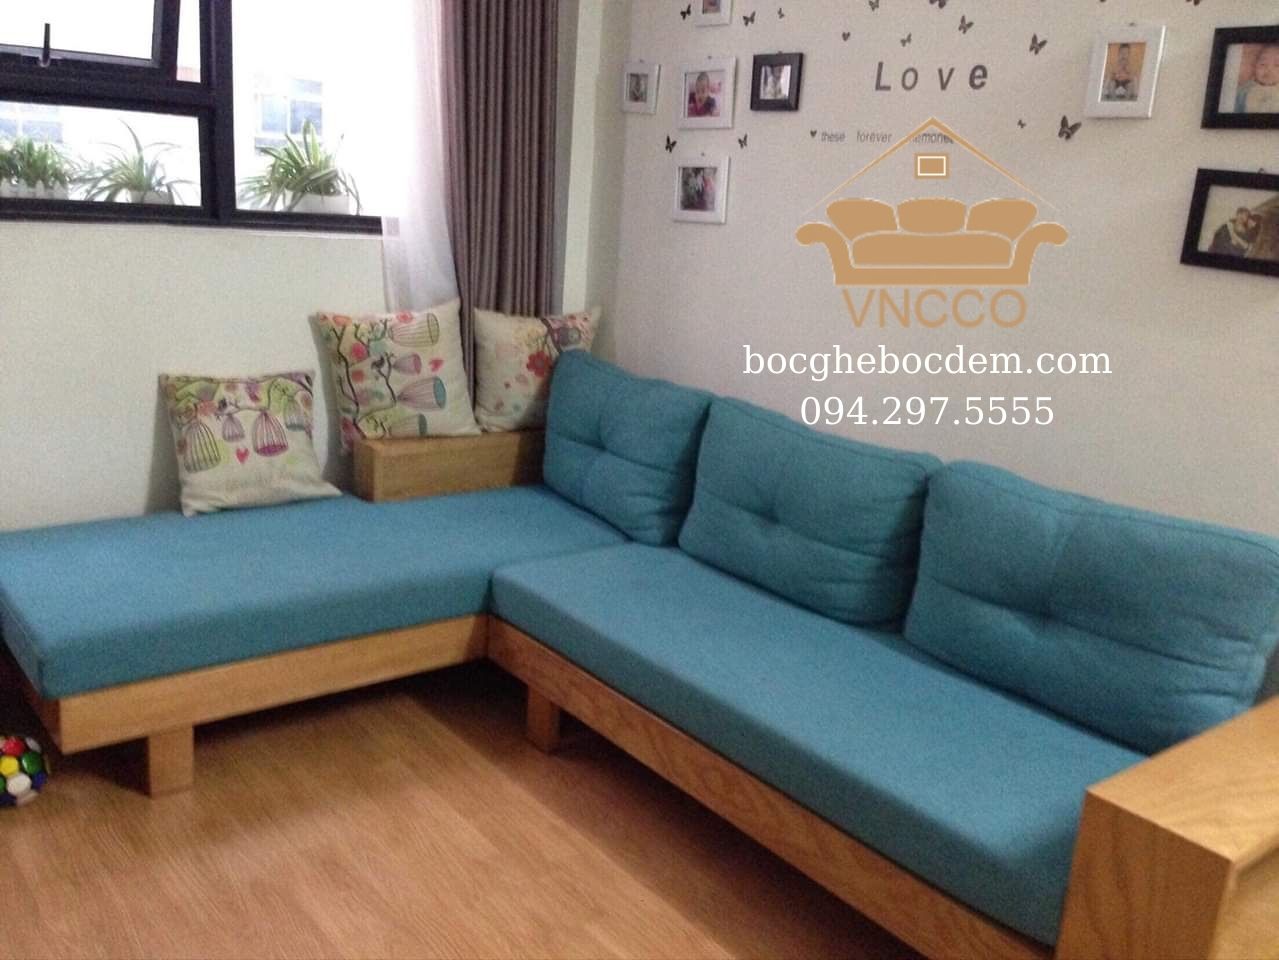 Bí kíp mua sofa gỗ đẹp chất lượng bạn nên biết